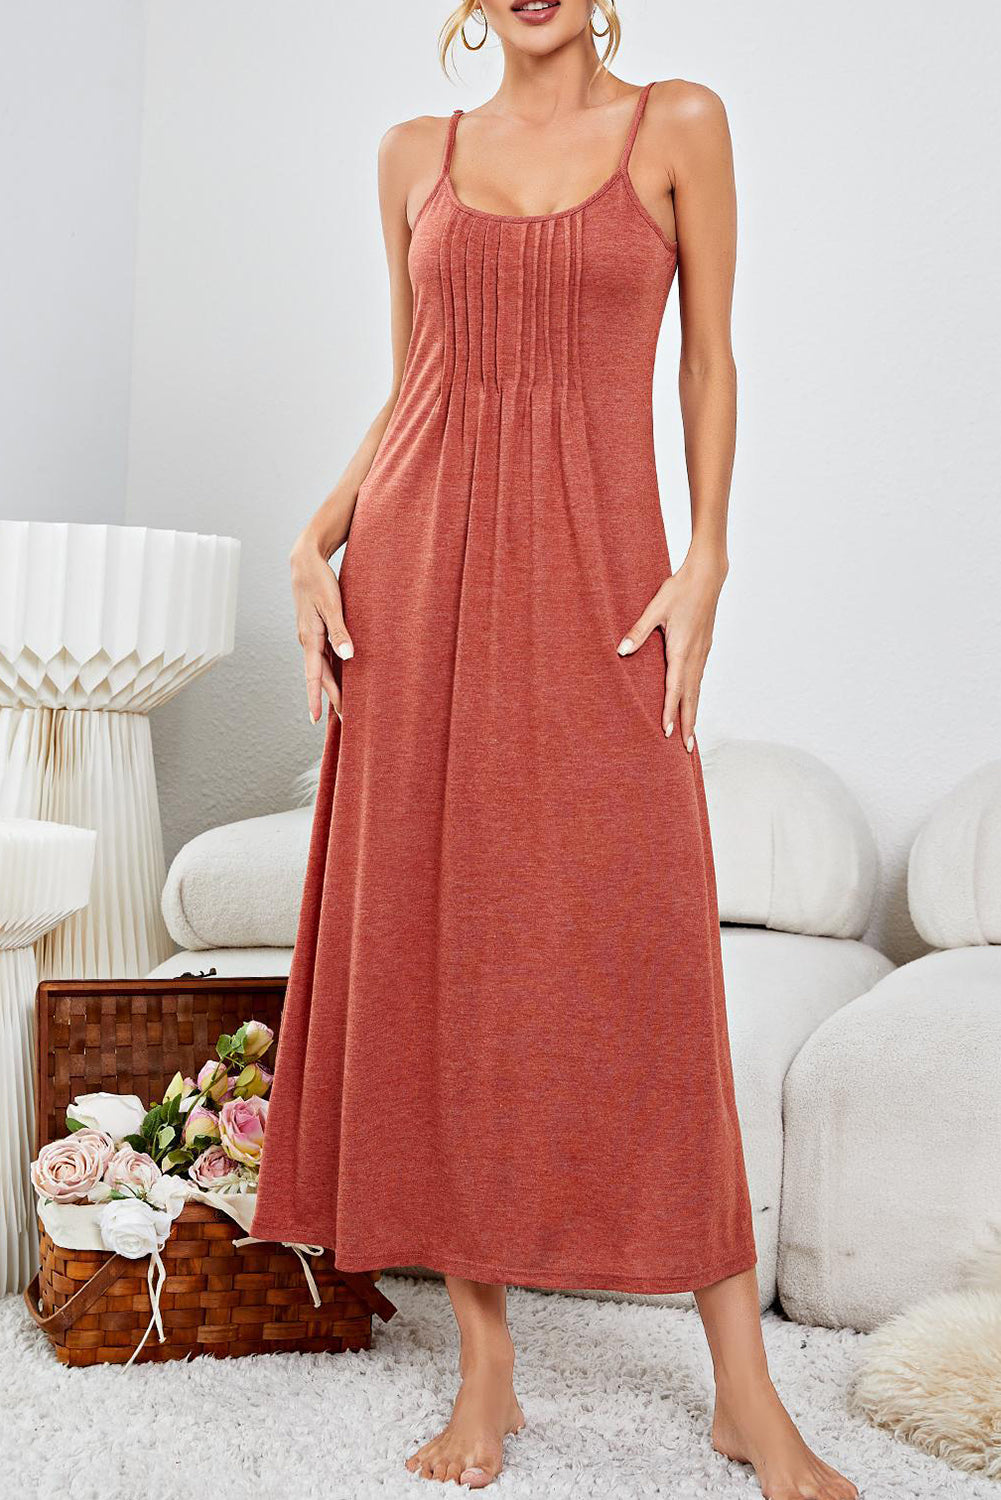 Duga salonska haljina s naborima na naramenice od crvene gline